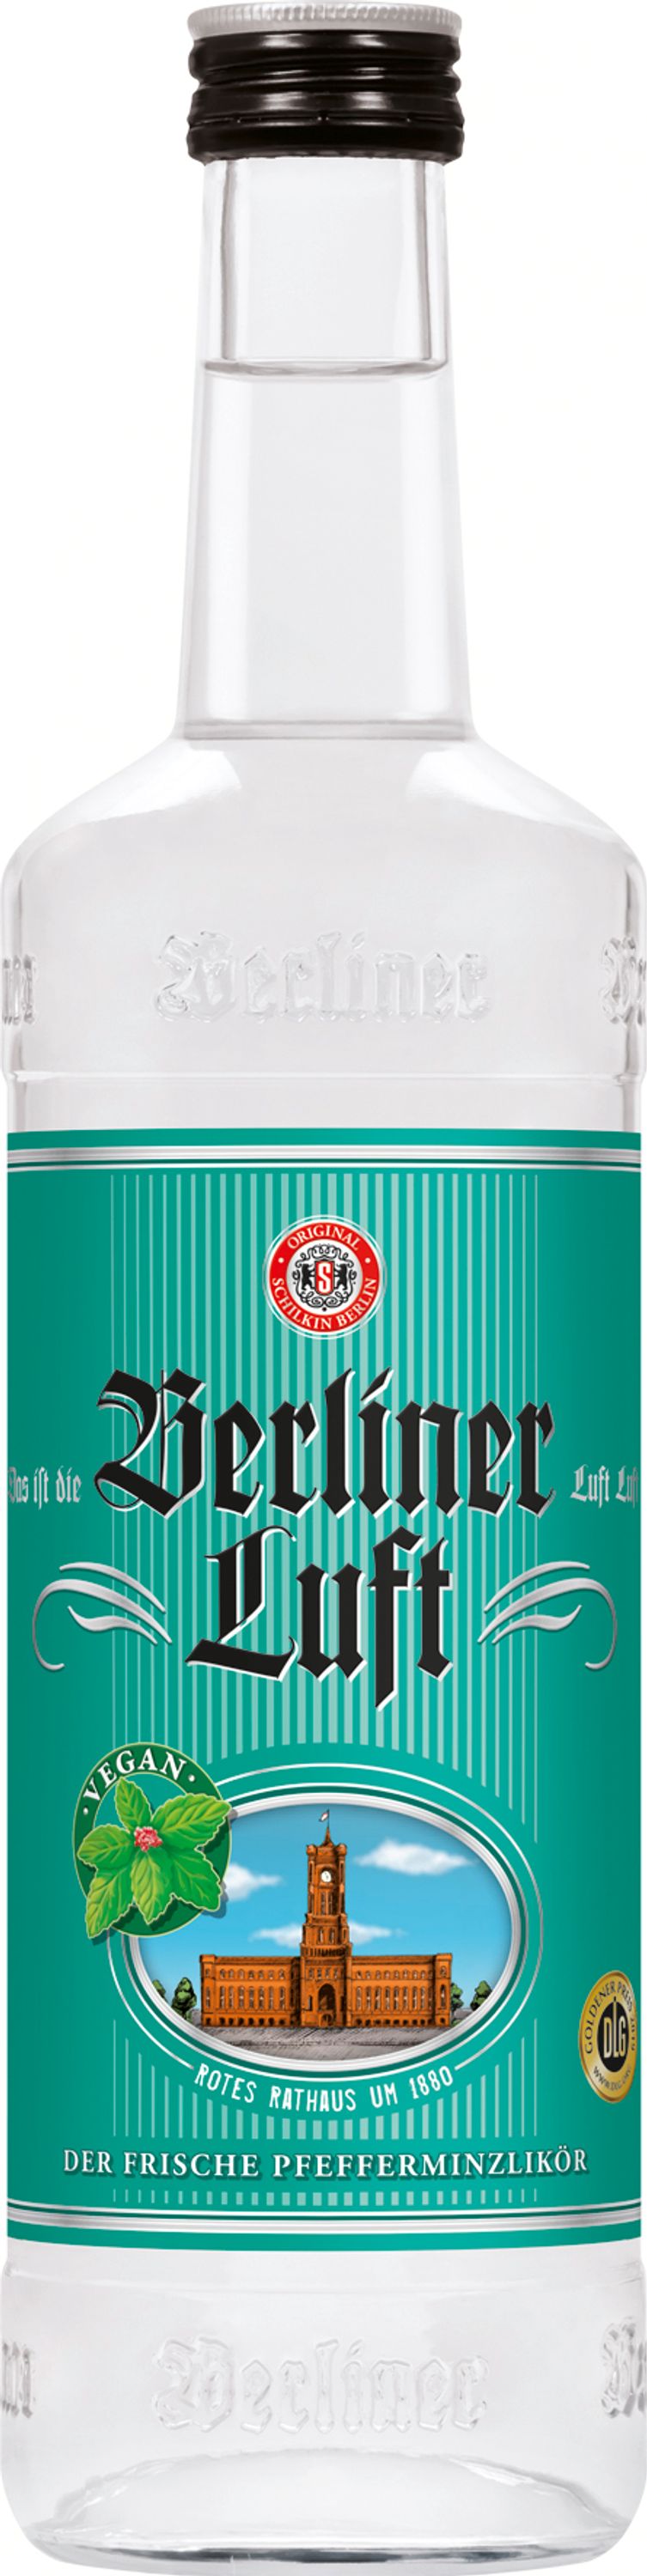 Berlin air peppermint liqueur, 0.7l, alc. 18% by volume